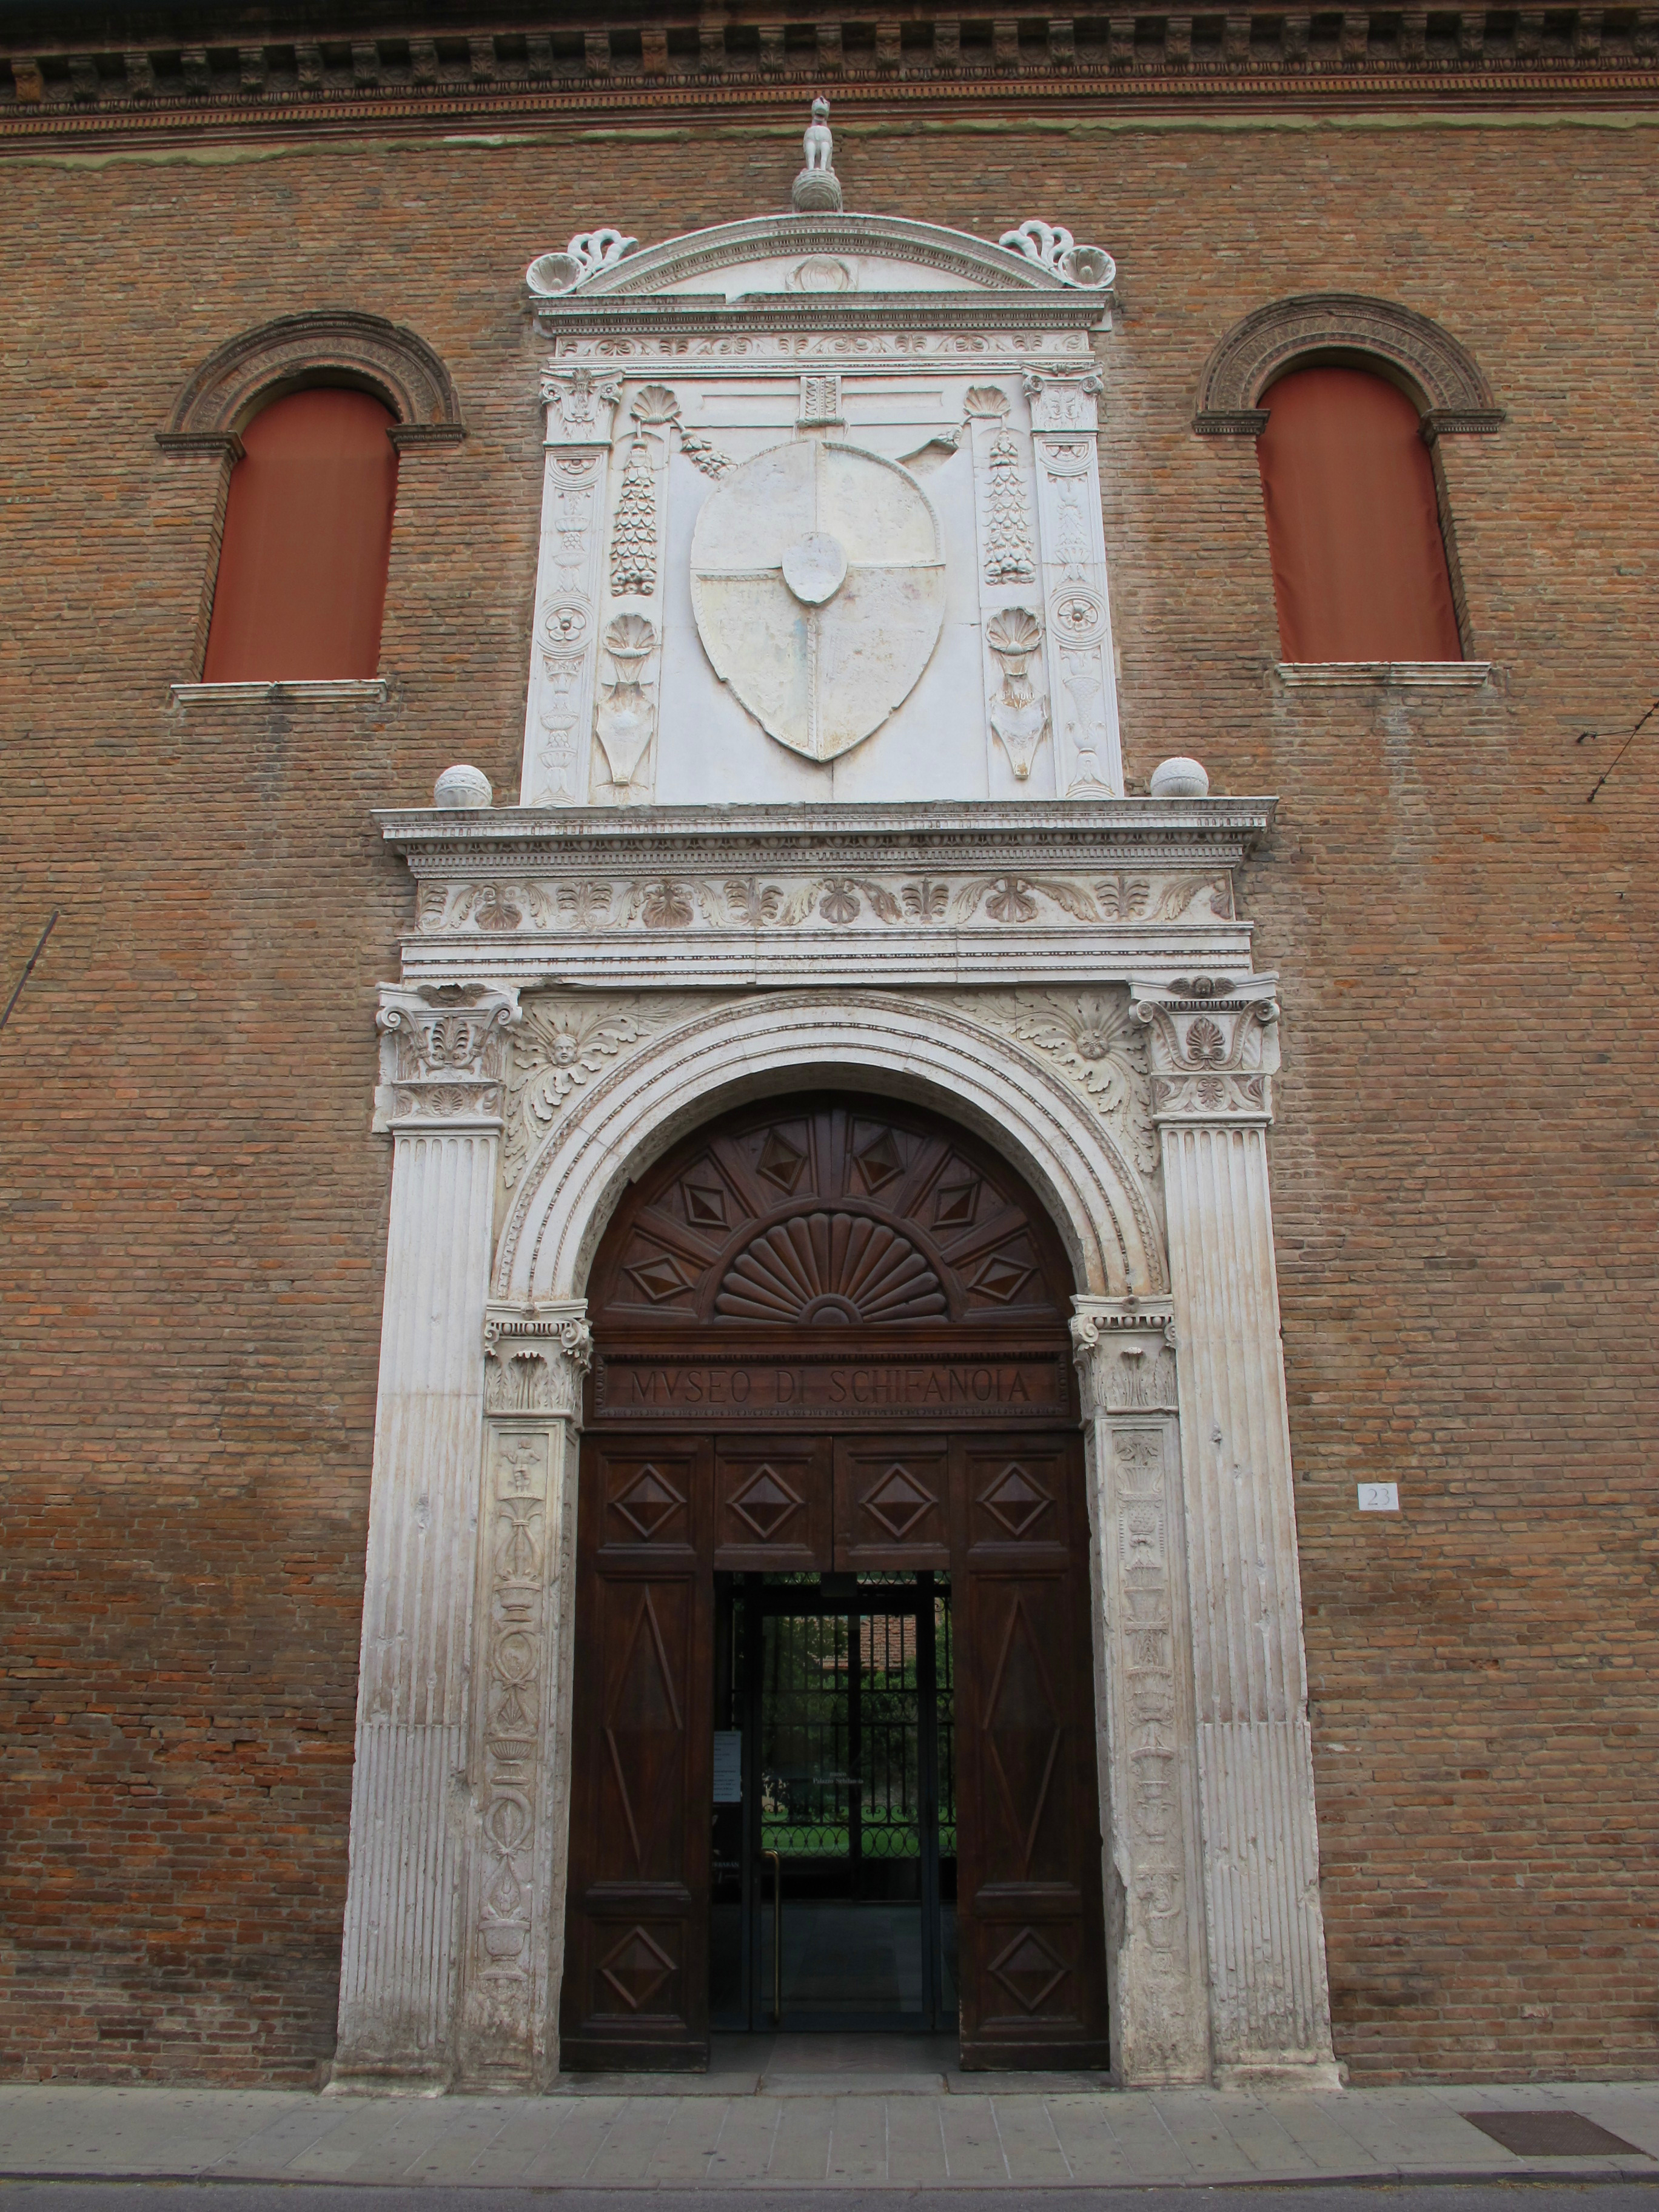 foto: https://upload.wikimedia.org/wikipedia/commons/a/a8/Palazzo_schifanoia%2C_ext.%2C_portale_maggiore_02.JPG